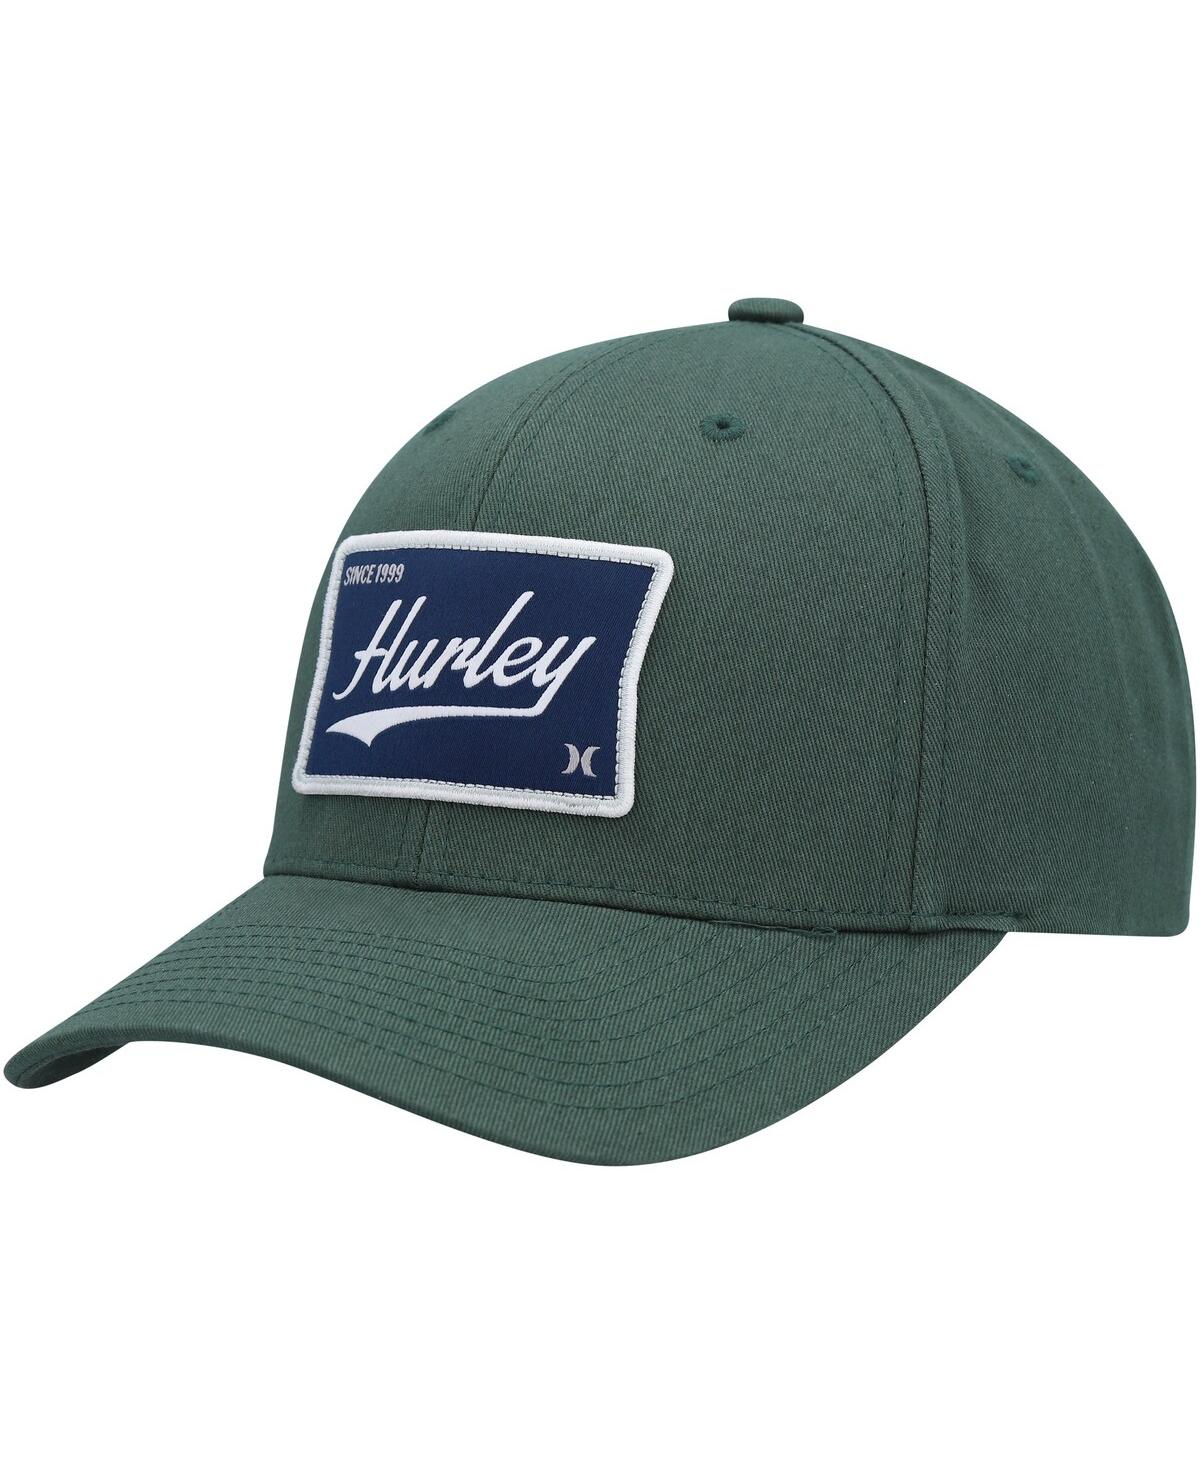 Men's Hurley Green Casper Snapback Hat - Green